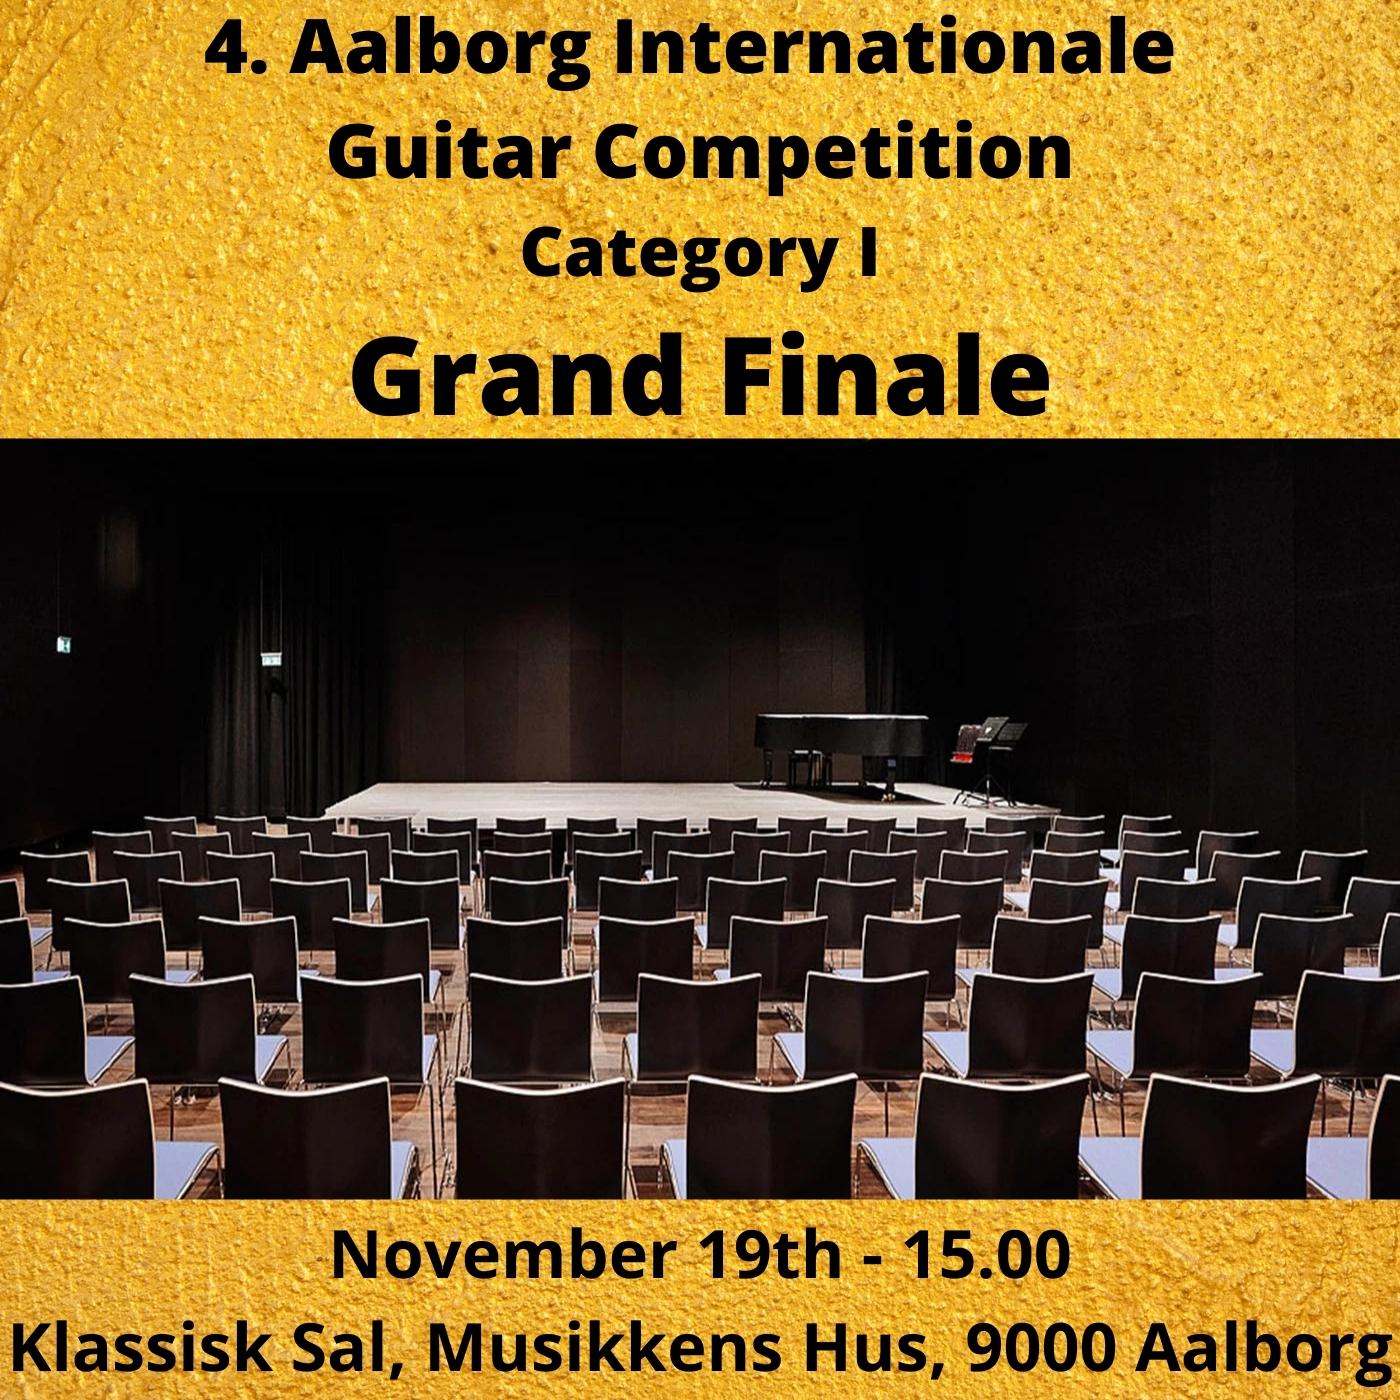 Aalborg Guitar Festival & Competition - Denmark